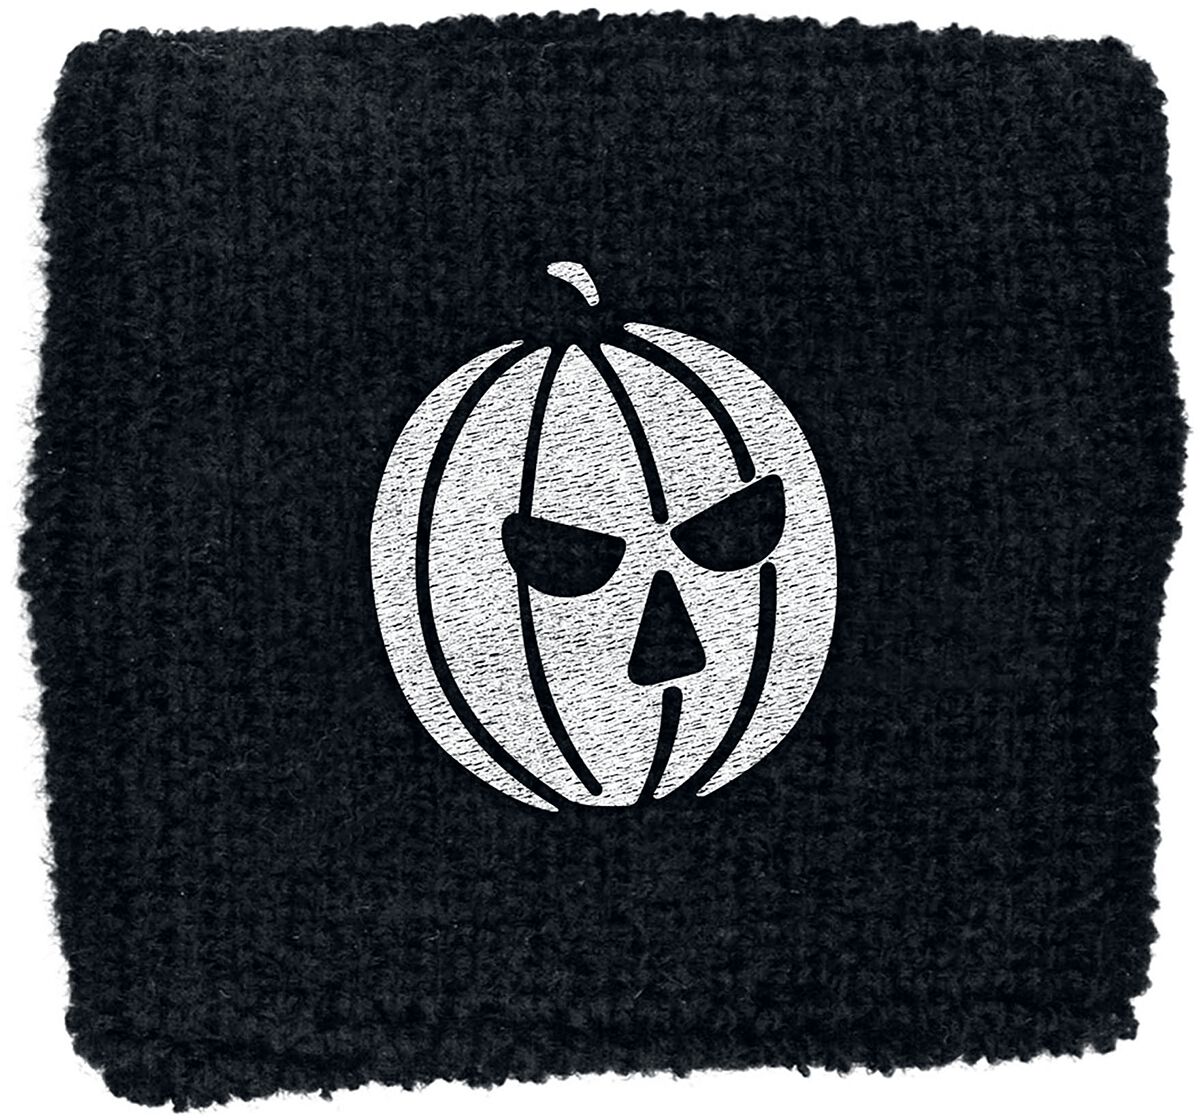 Halloween Schweißband - Pumpkin - schwarz  - Lizenziertes Merchandise!